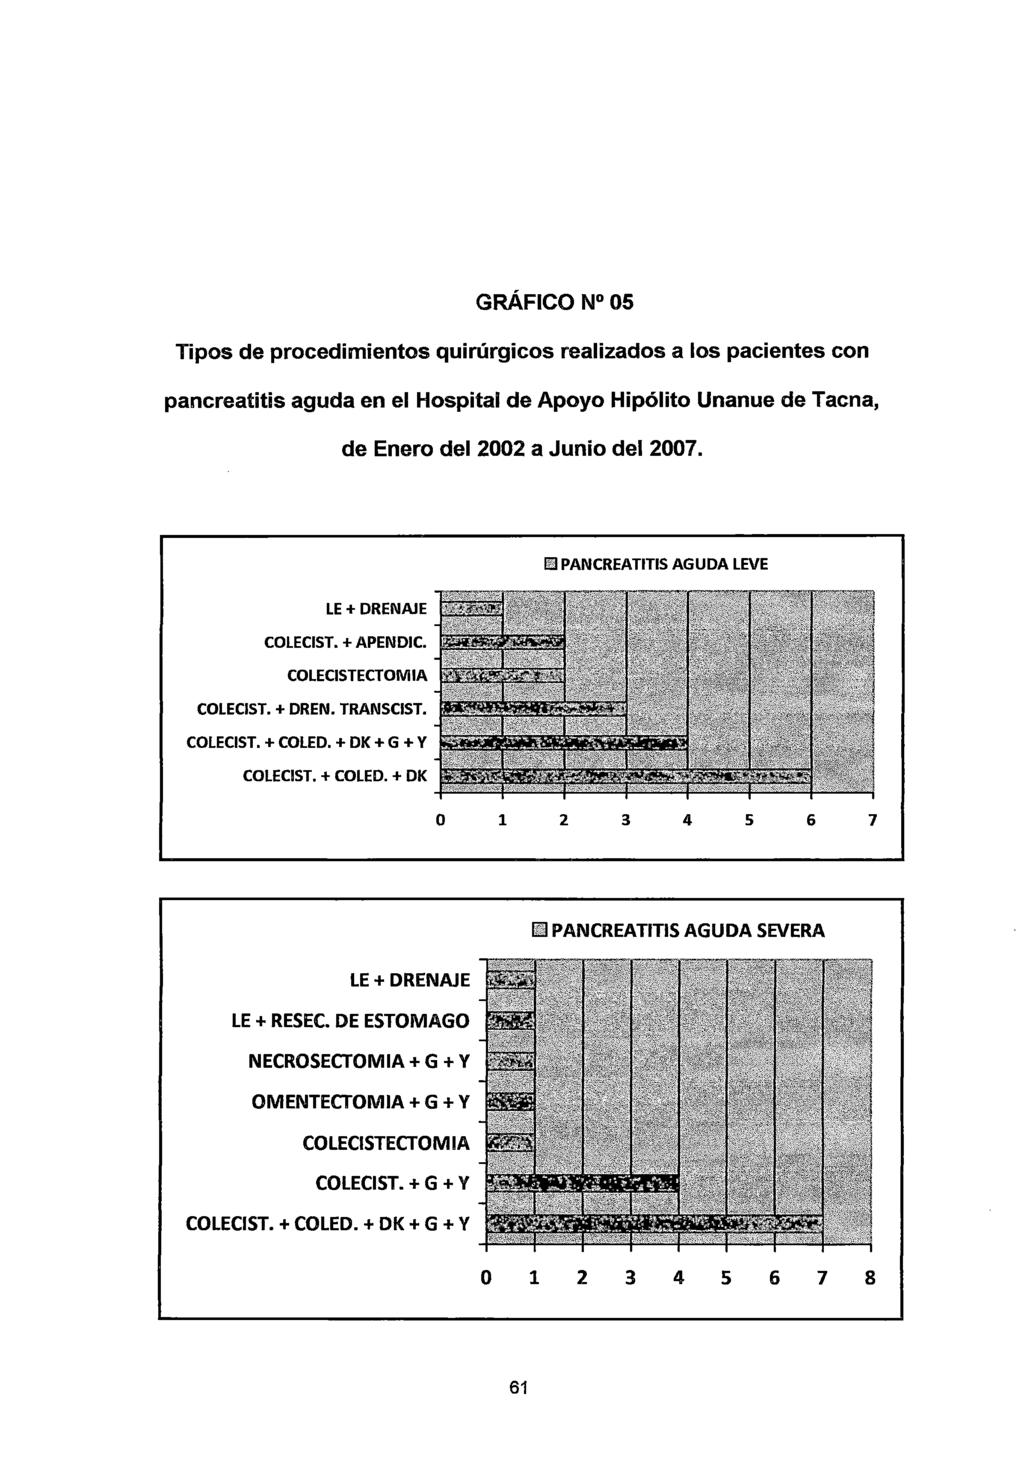 GRÁFICO N 05 Tipos de procedimientos quirúrgicos realizados a los pacientes con pancreatitis aguda en el Hospital de Apoyo Hipólito Unanue de Tacna, de Enero del 2002 a Junio del 2007.